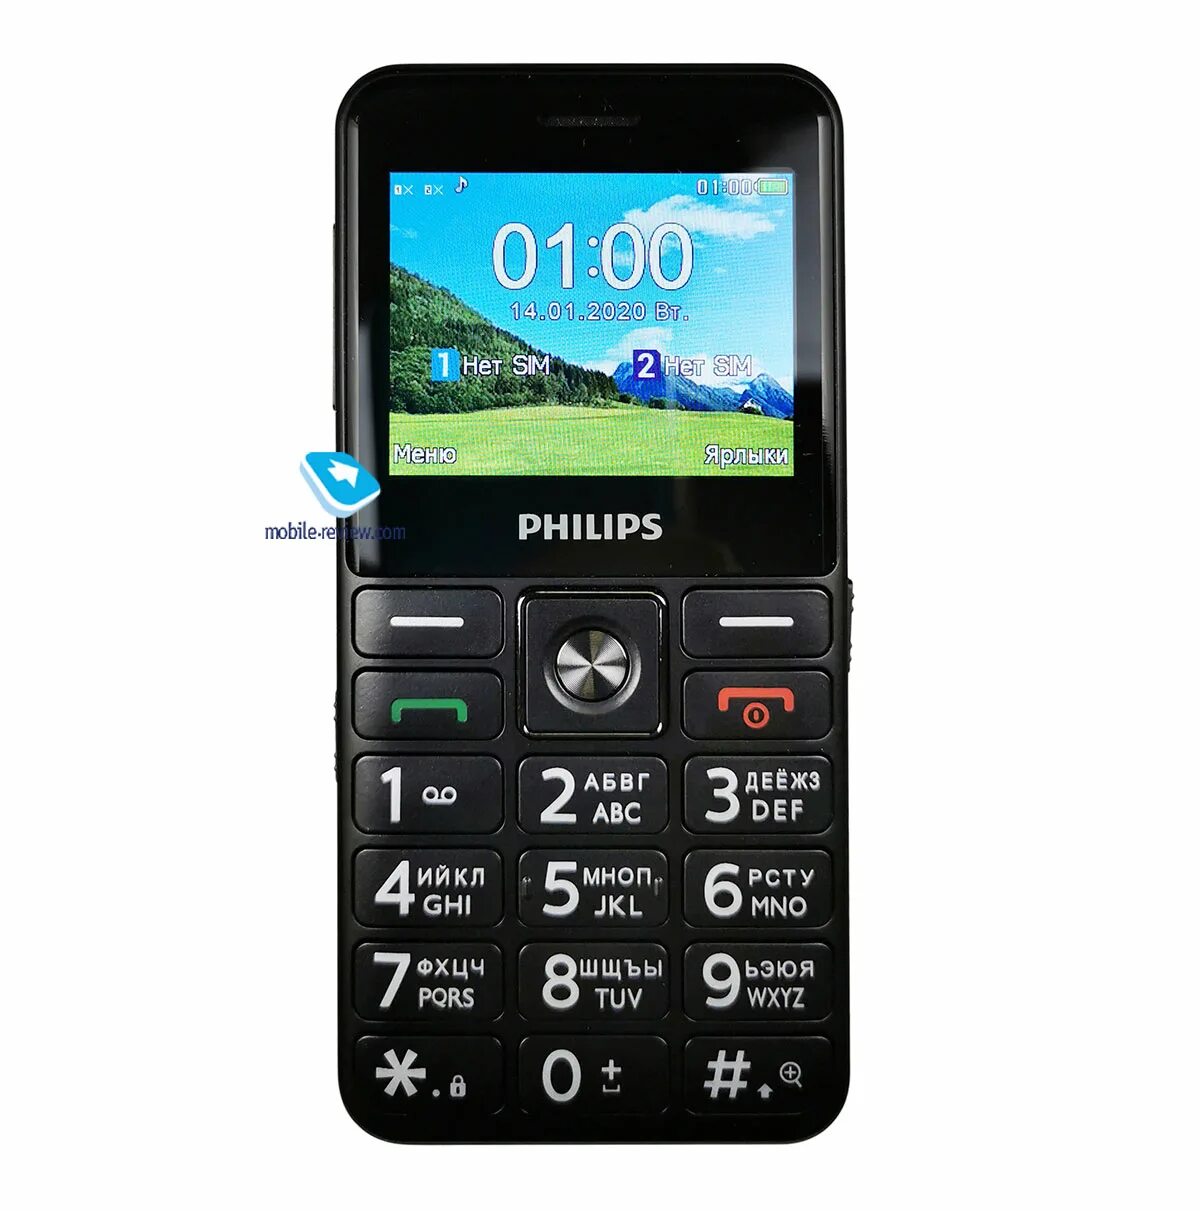 Филипс е 207. Philips Xenium e207. Philips Xenium e117. Телефон Philips Xenium e117. Телефон Philips Xenium e207.